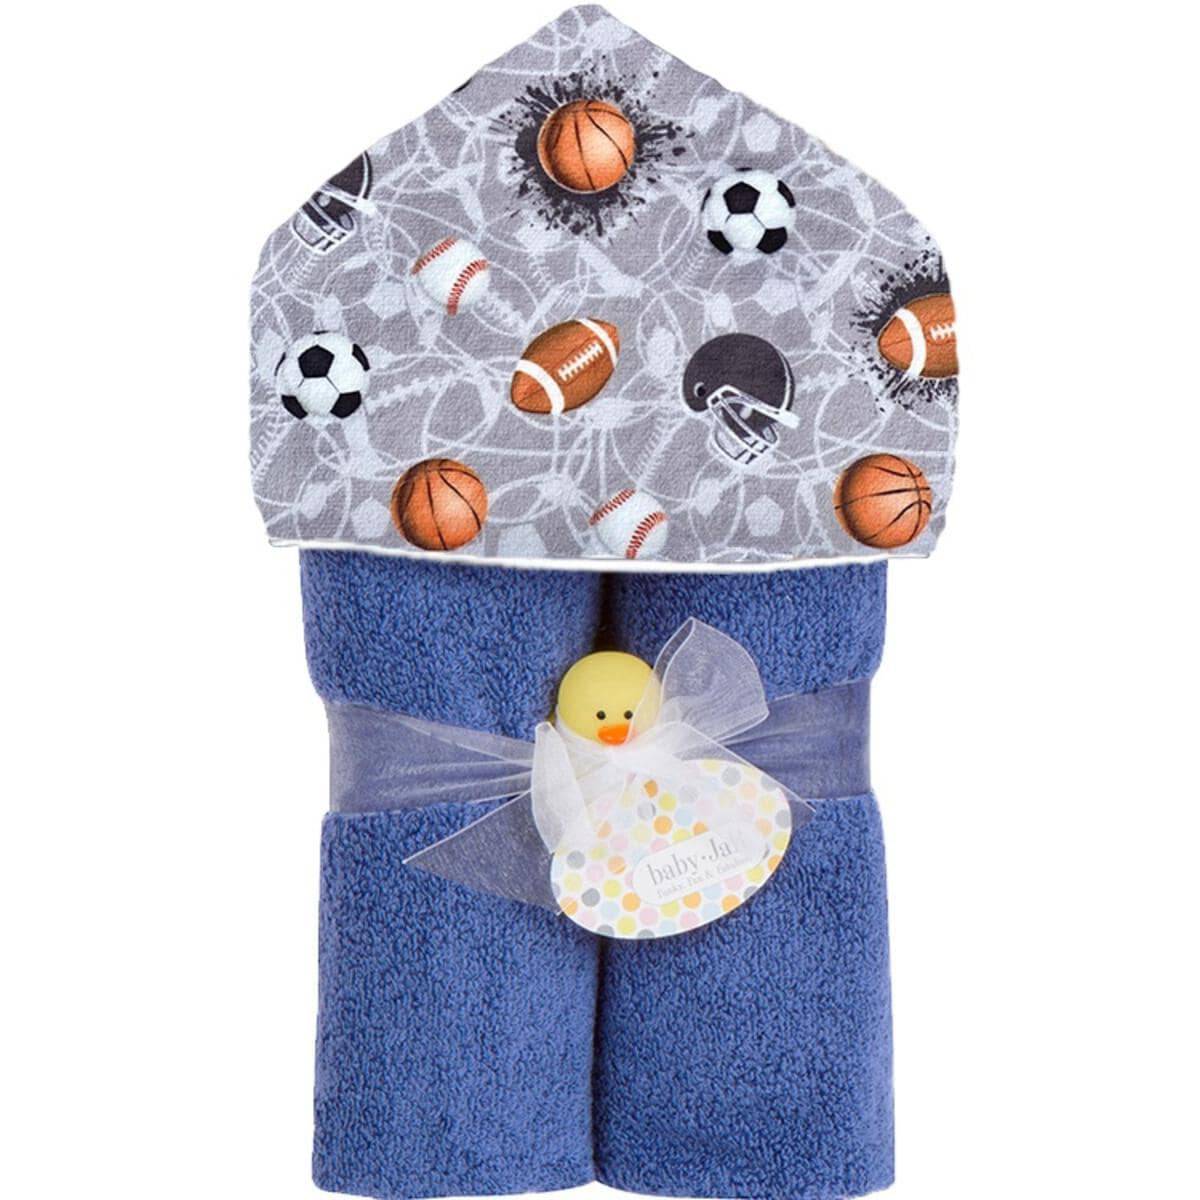 Sports Jam Plush Deluxe Hooded Towel - Twinkle Twinkle Little One